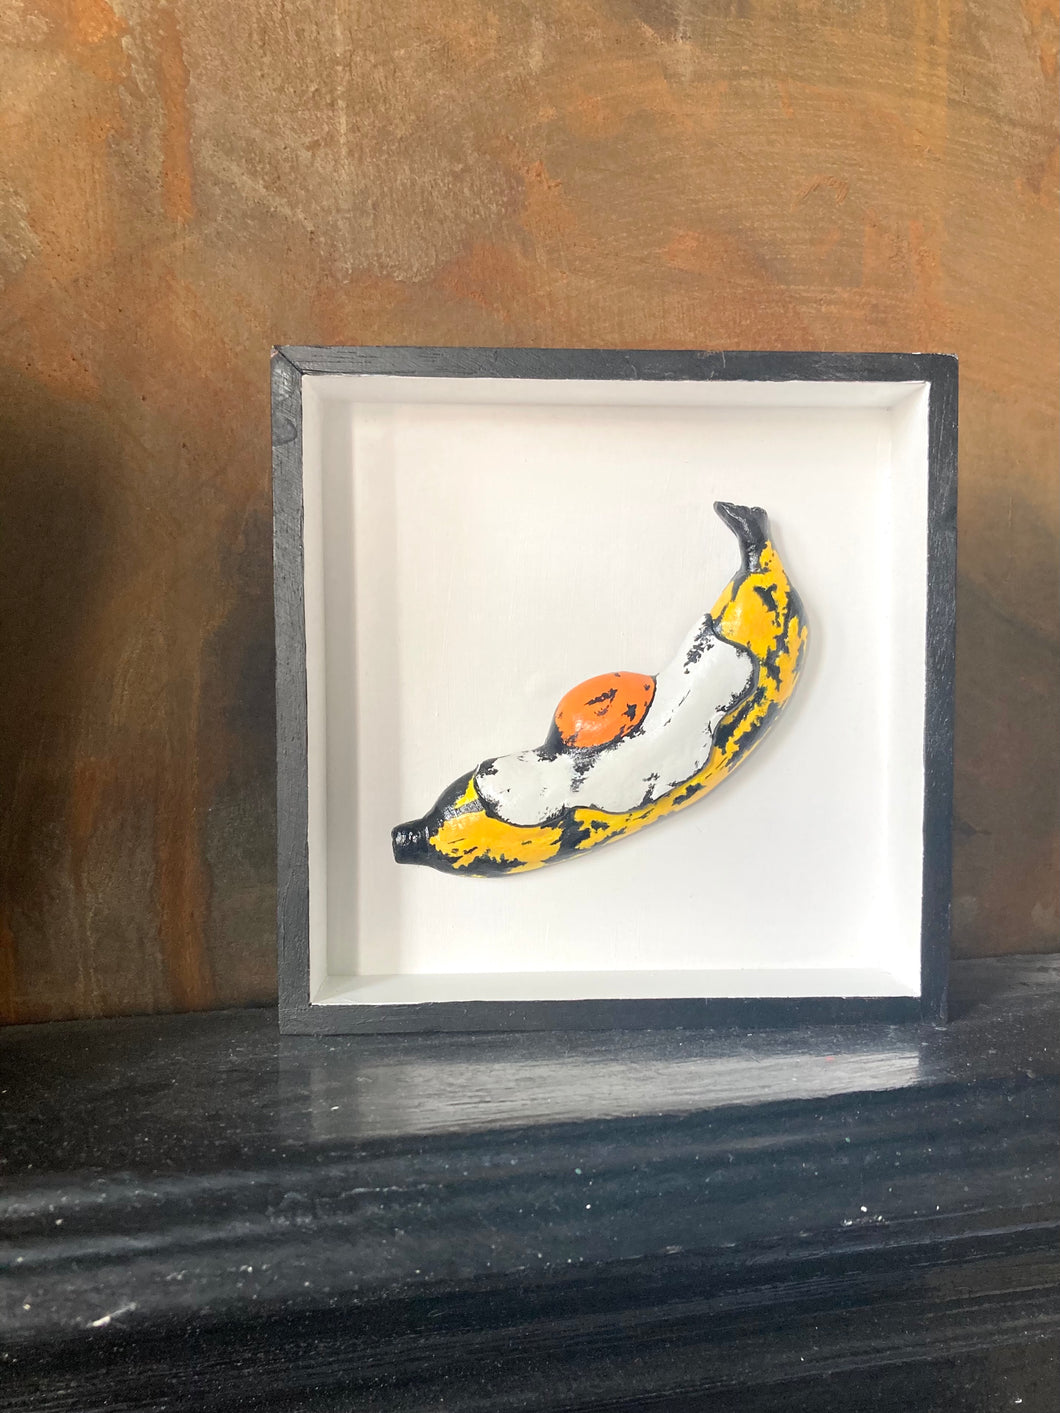 Velvet Underground Banana Egg